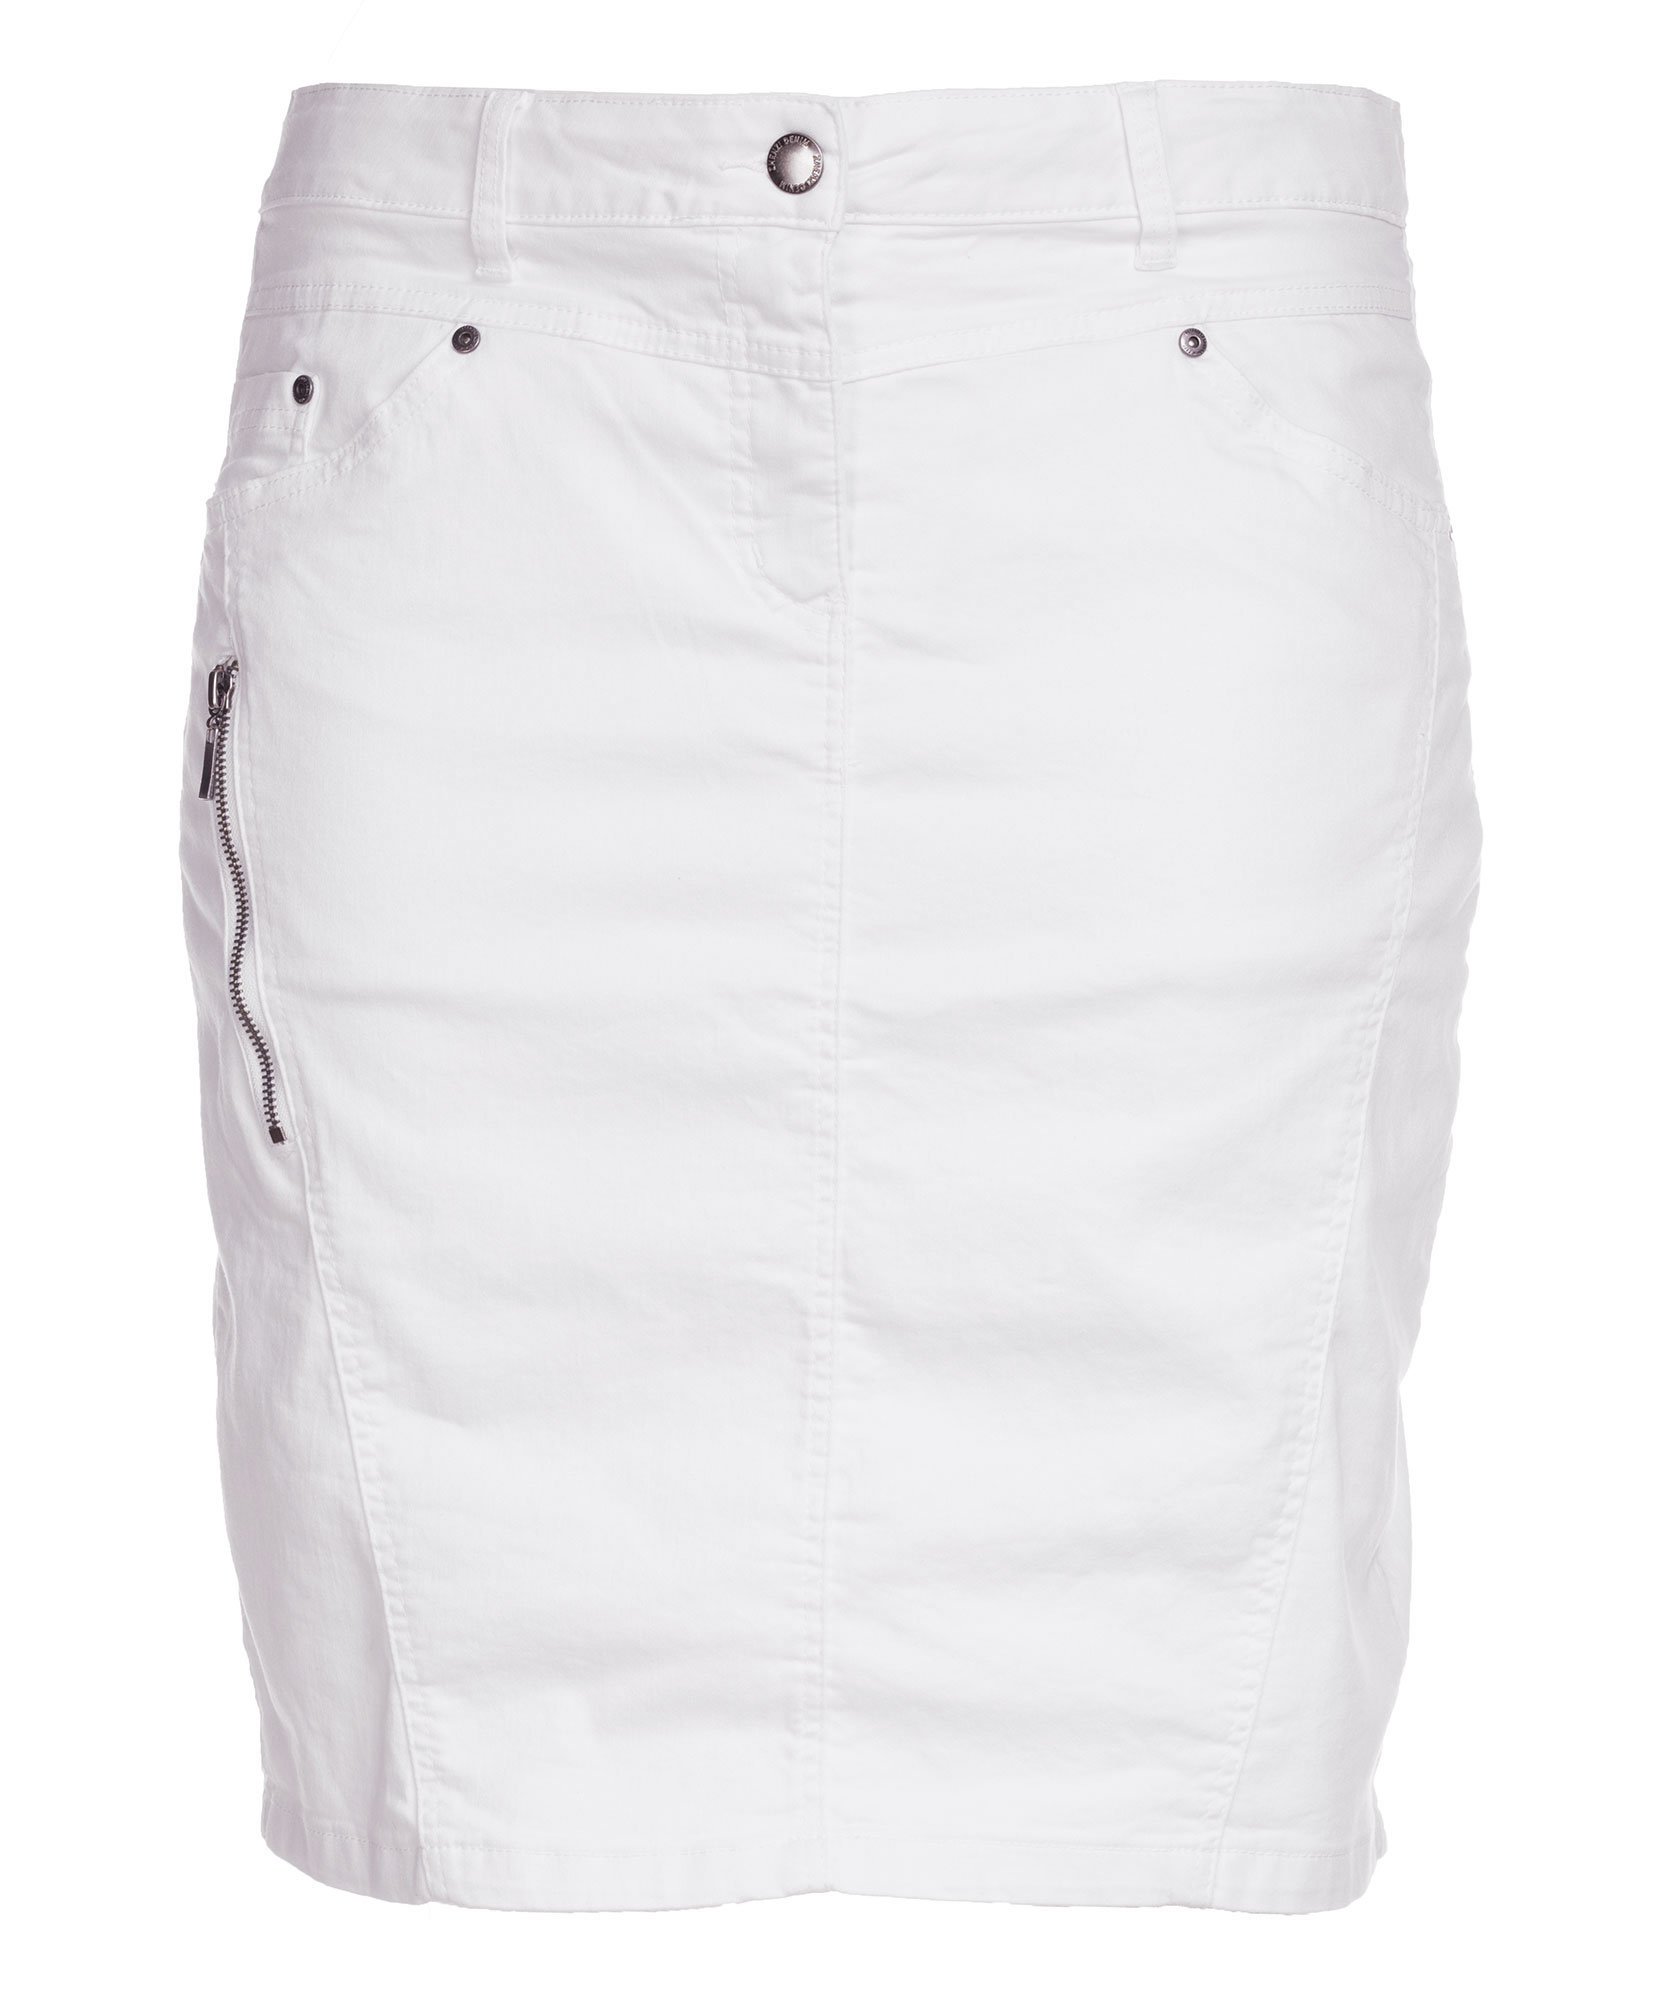 Billede af Hvid stræk nederdel med skånebukser